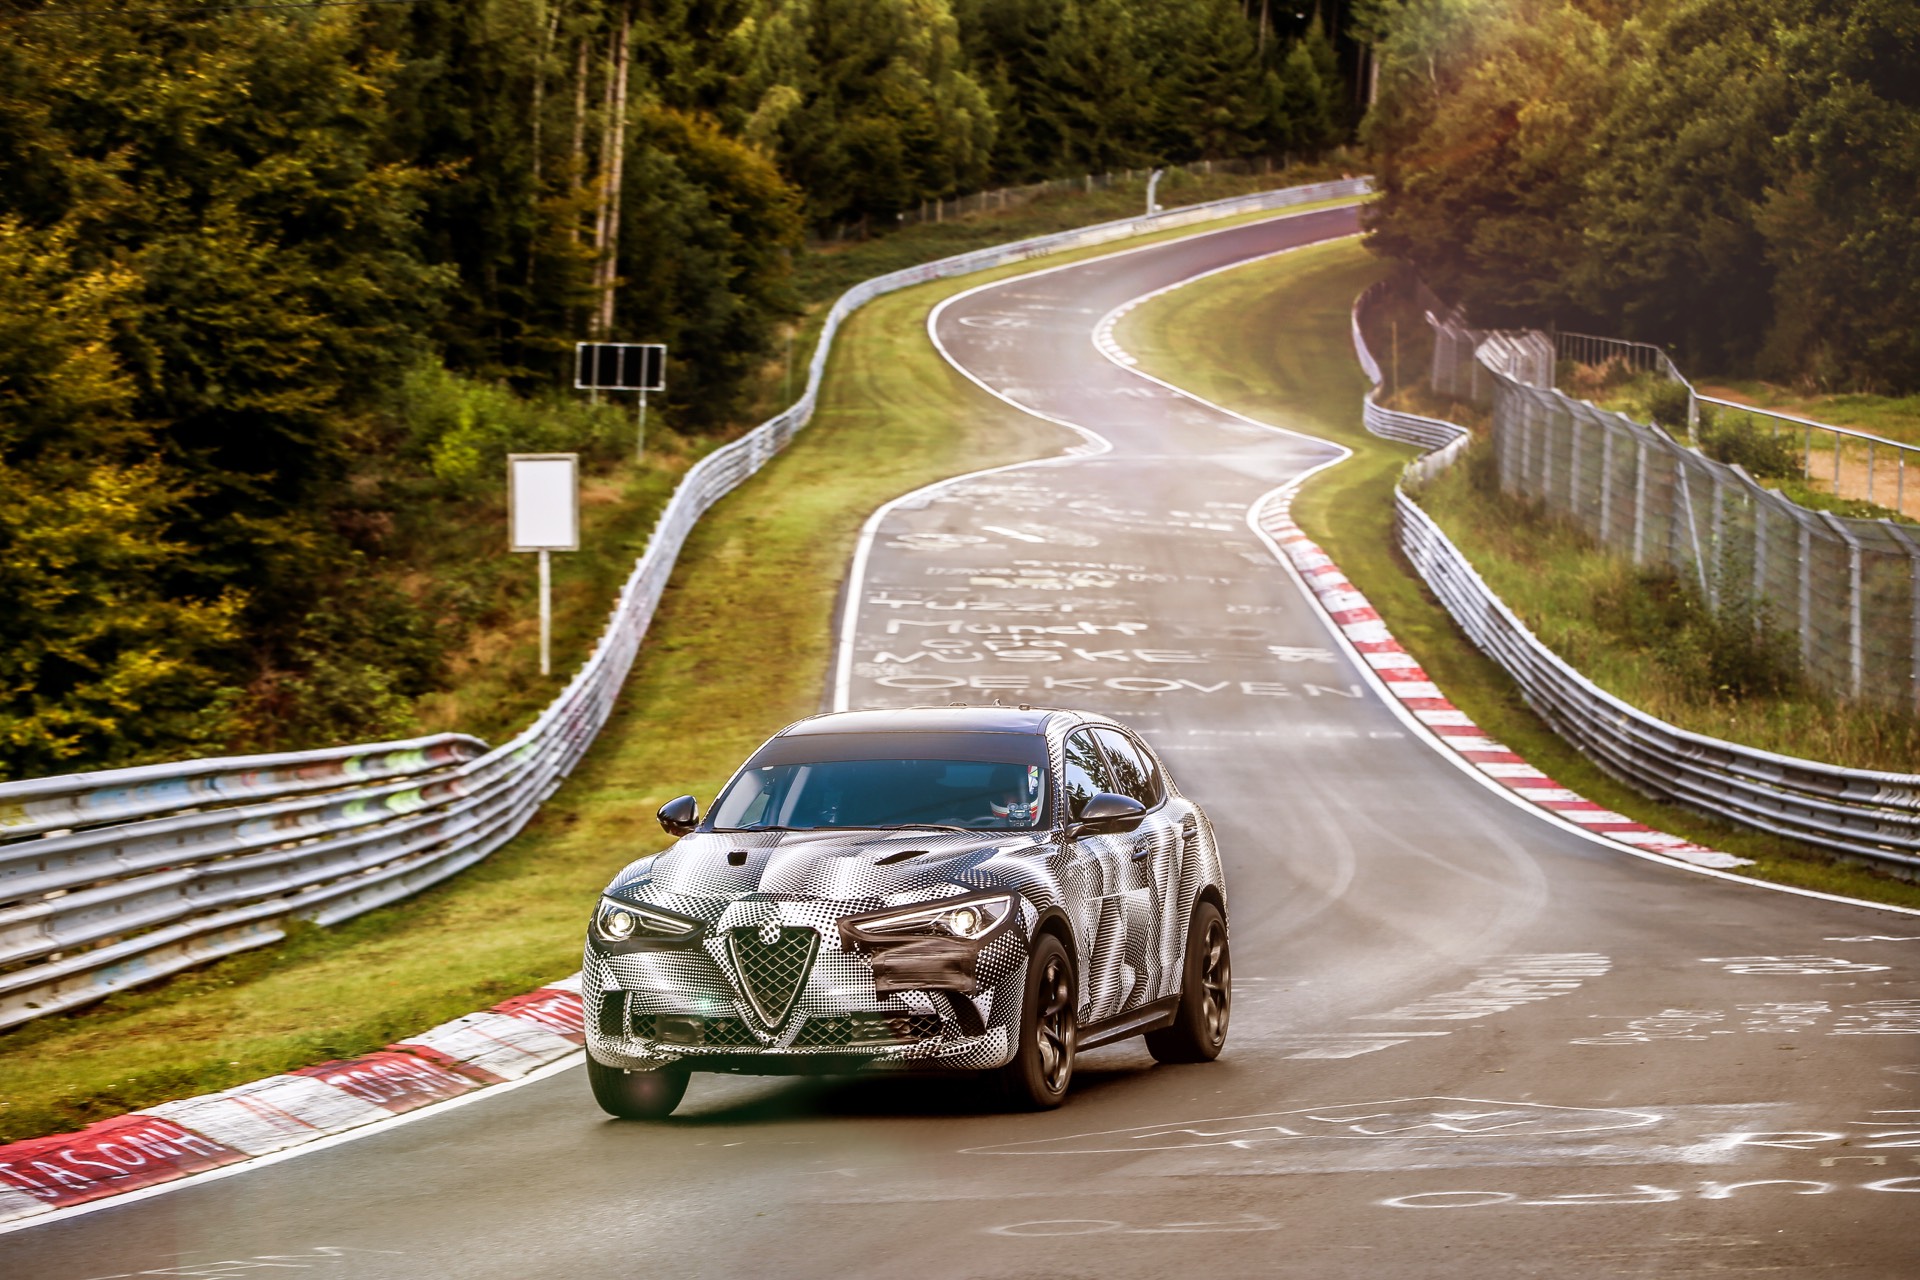 Alfa Romeo заявил, что новый рекорд Нюрбургринга установлен в его новым внедорожником Alfa Romeo Stelvio QV.